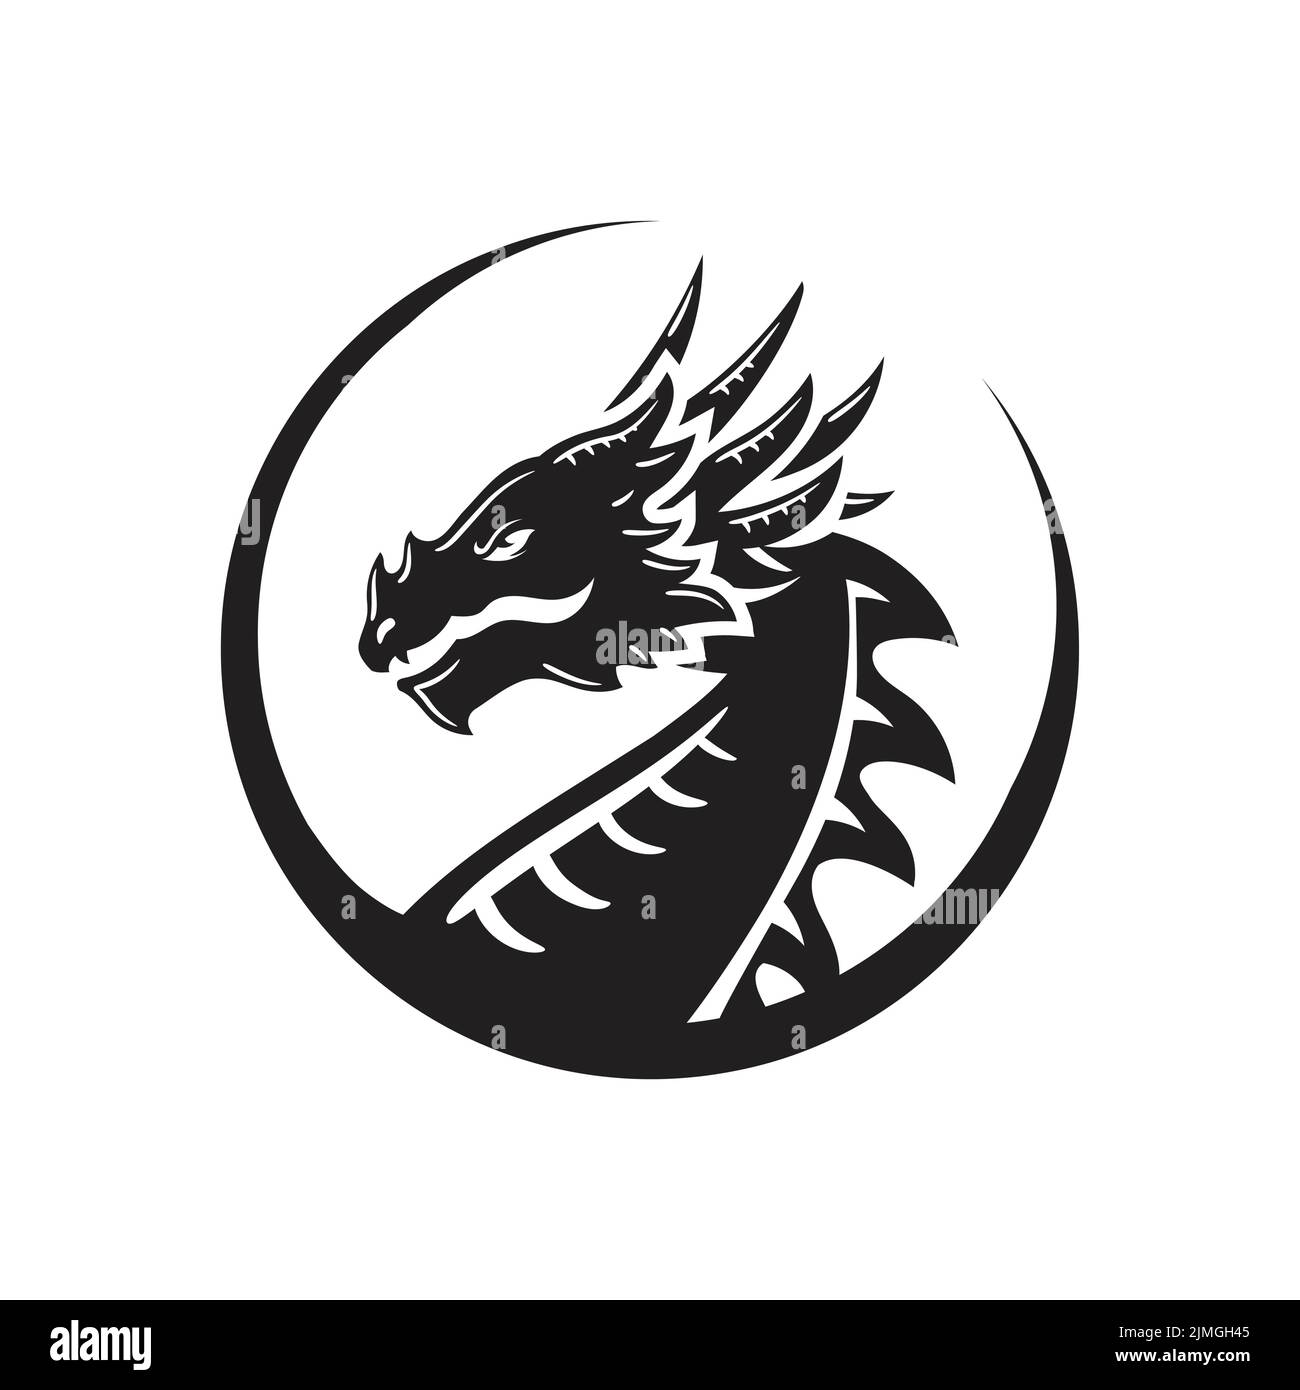 La silhouette della testa del drago, dipinta di nero con varie linee, il logo della figura del drago fata Vector Illustrazione Vettoriale